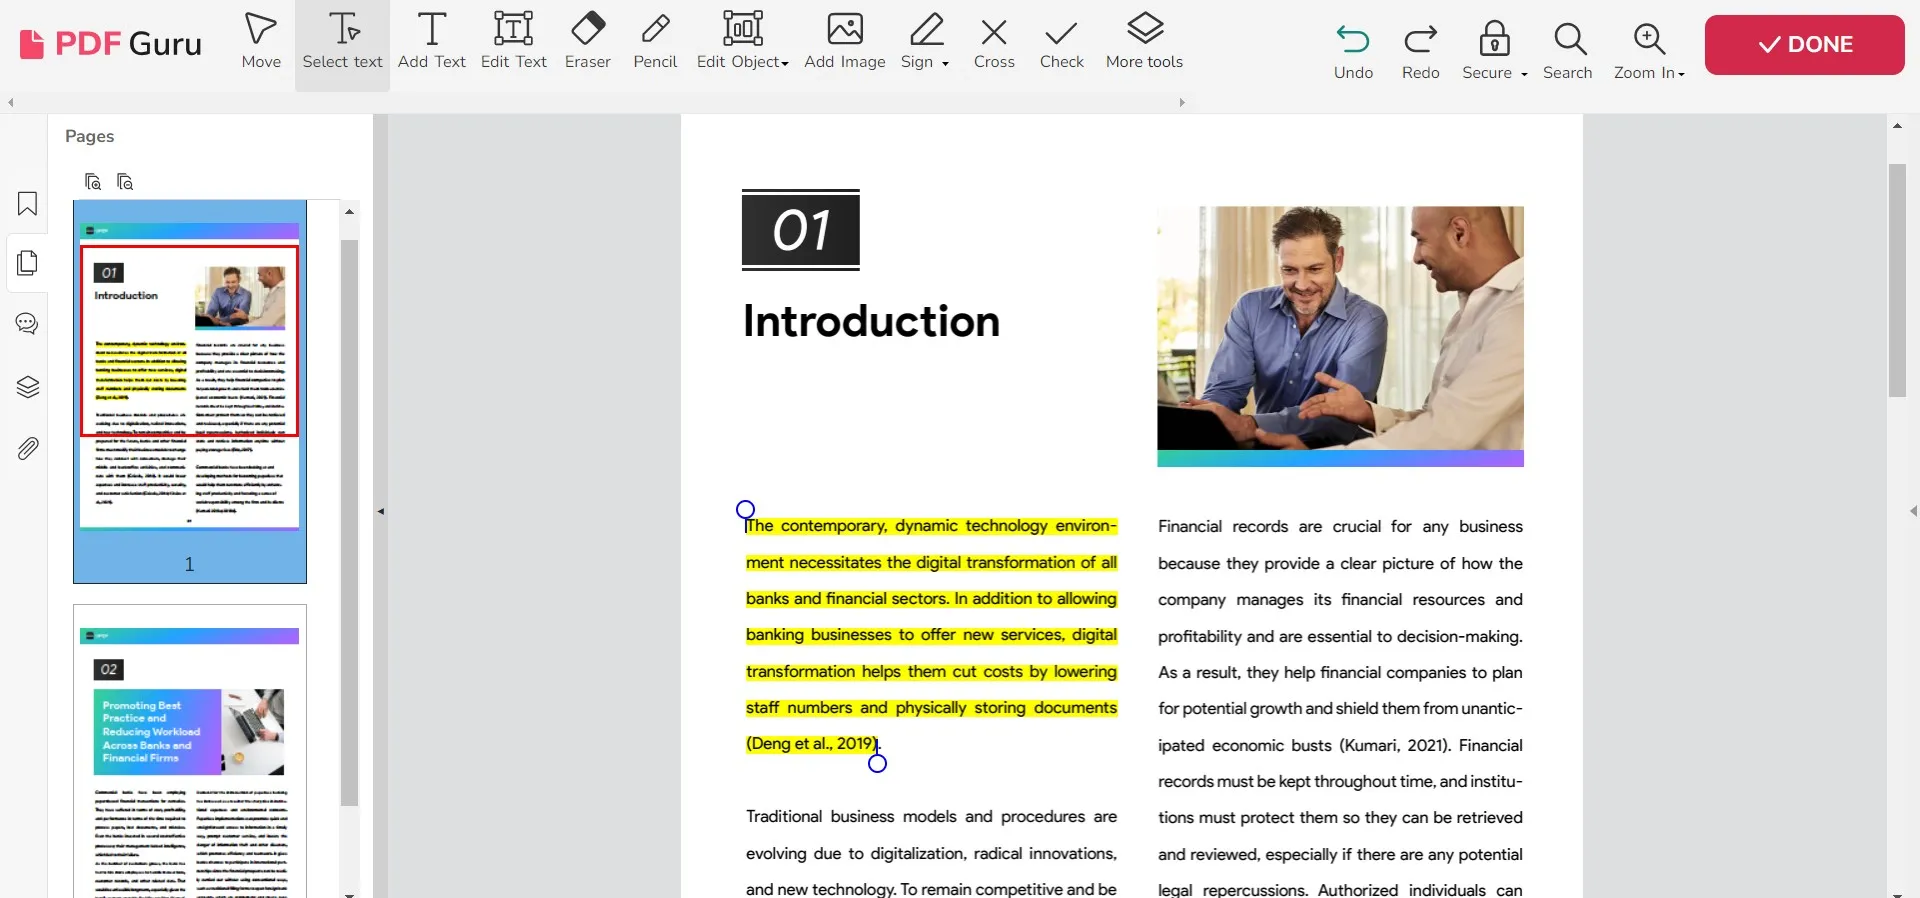 pdf guru highlight